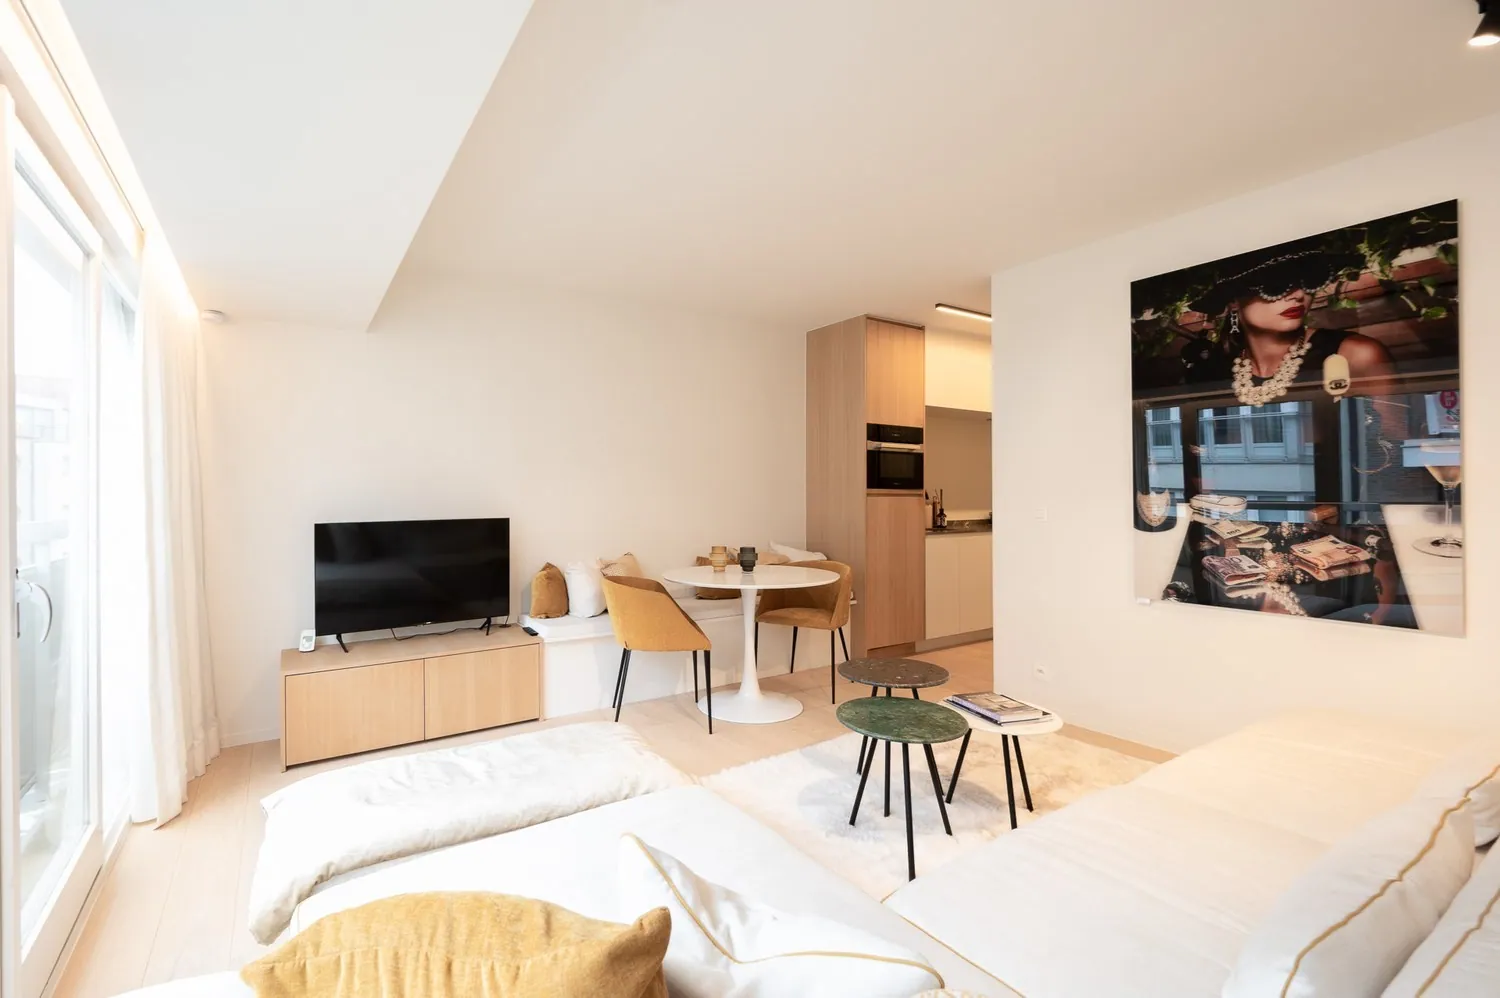 Luxueus afgewerkt appartement met 1 slaapkamer nabij Dumortierlaan gelegen.